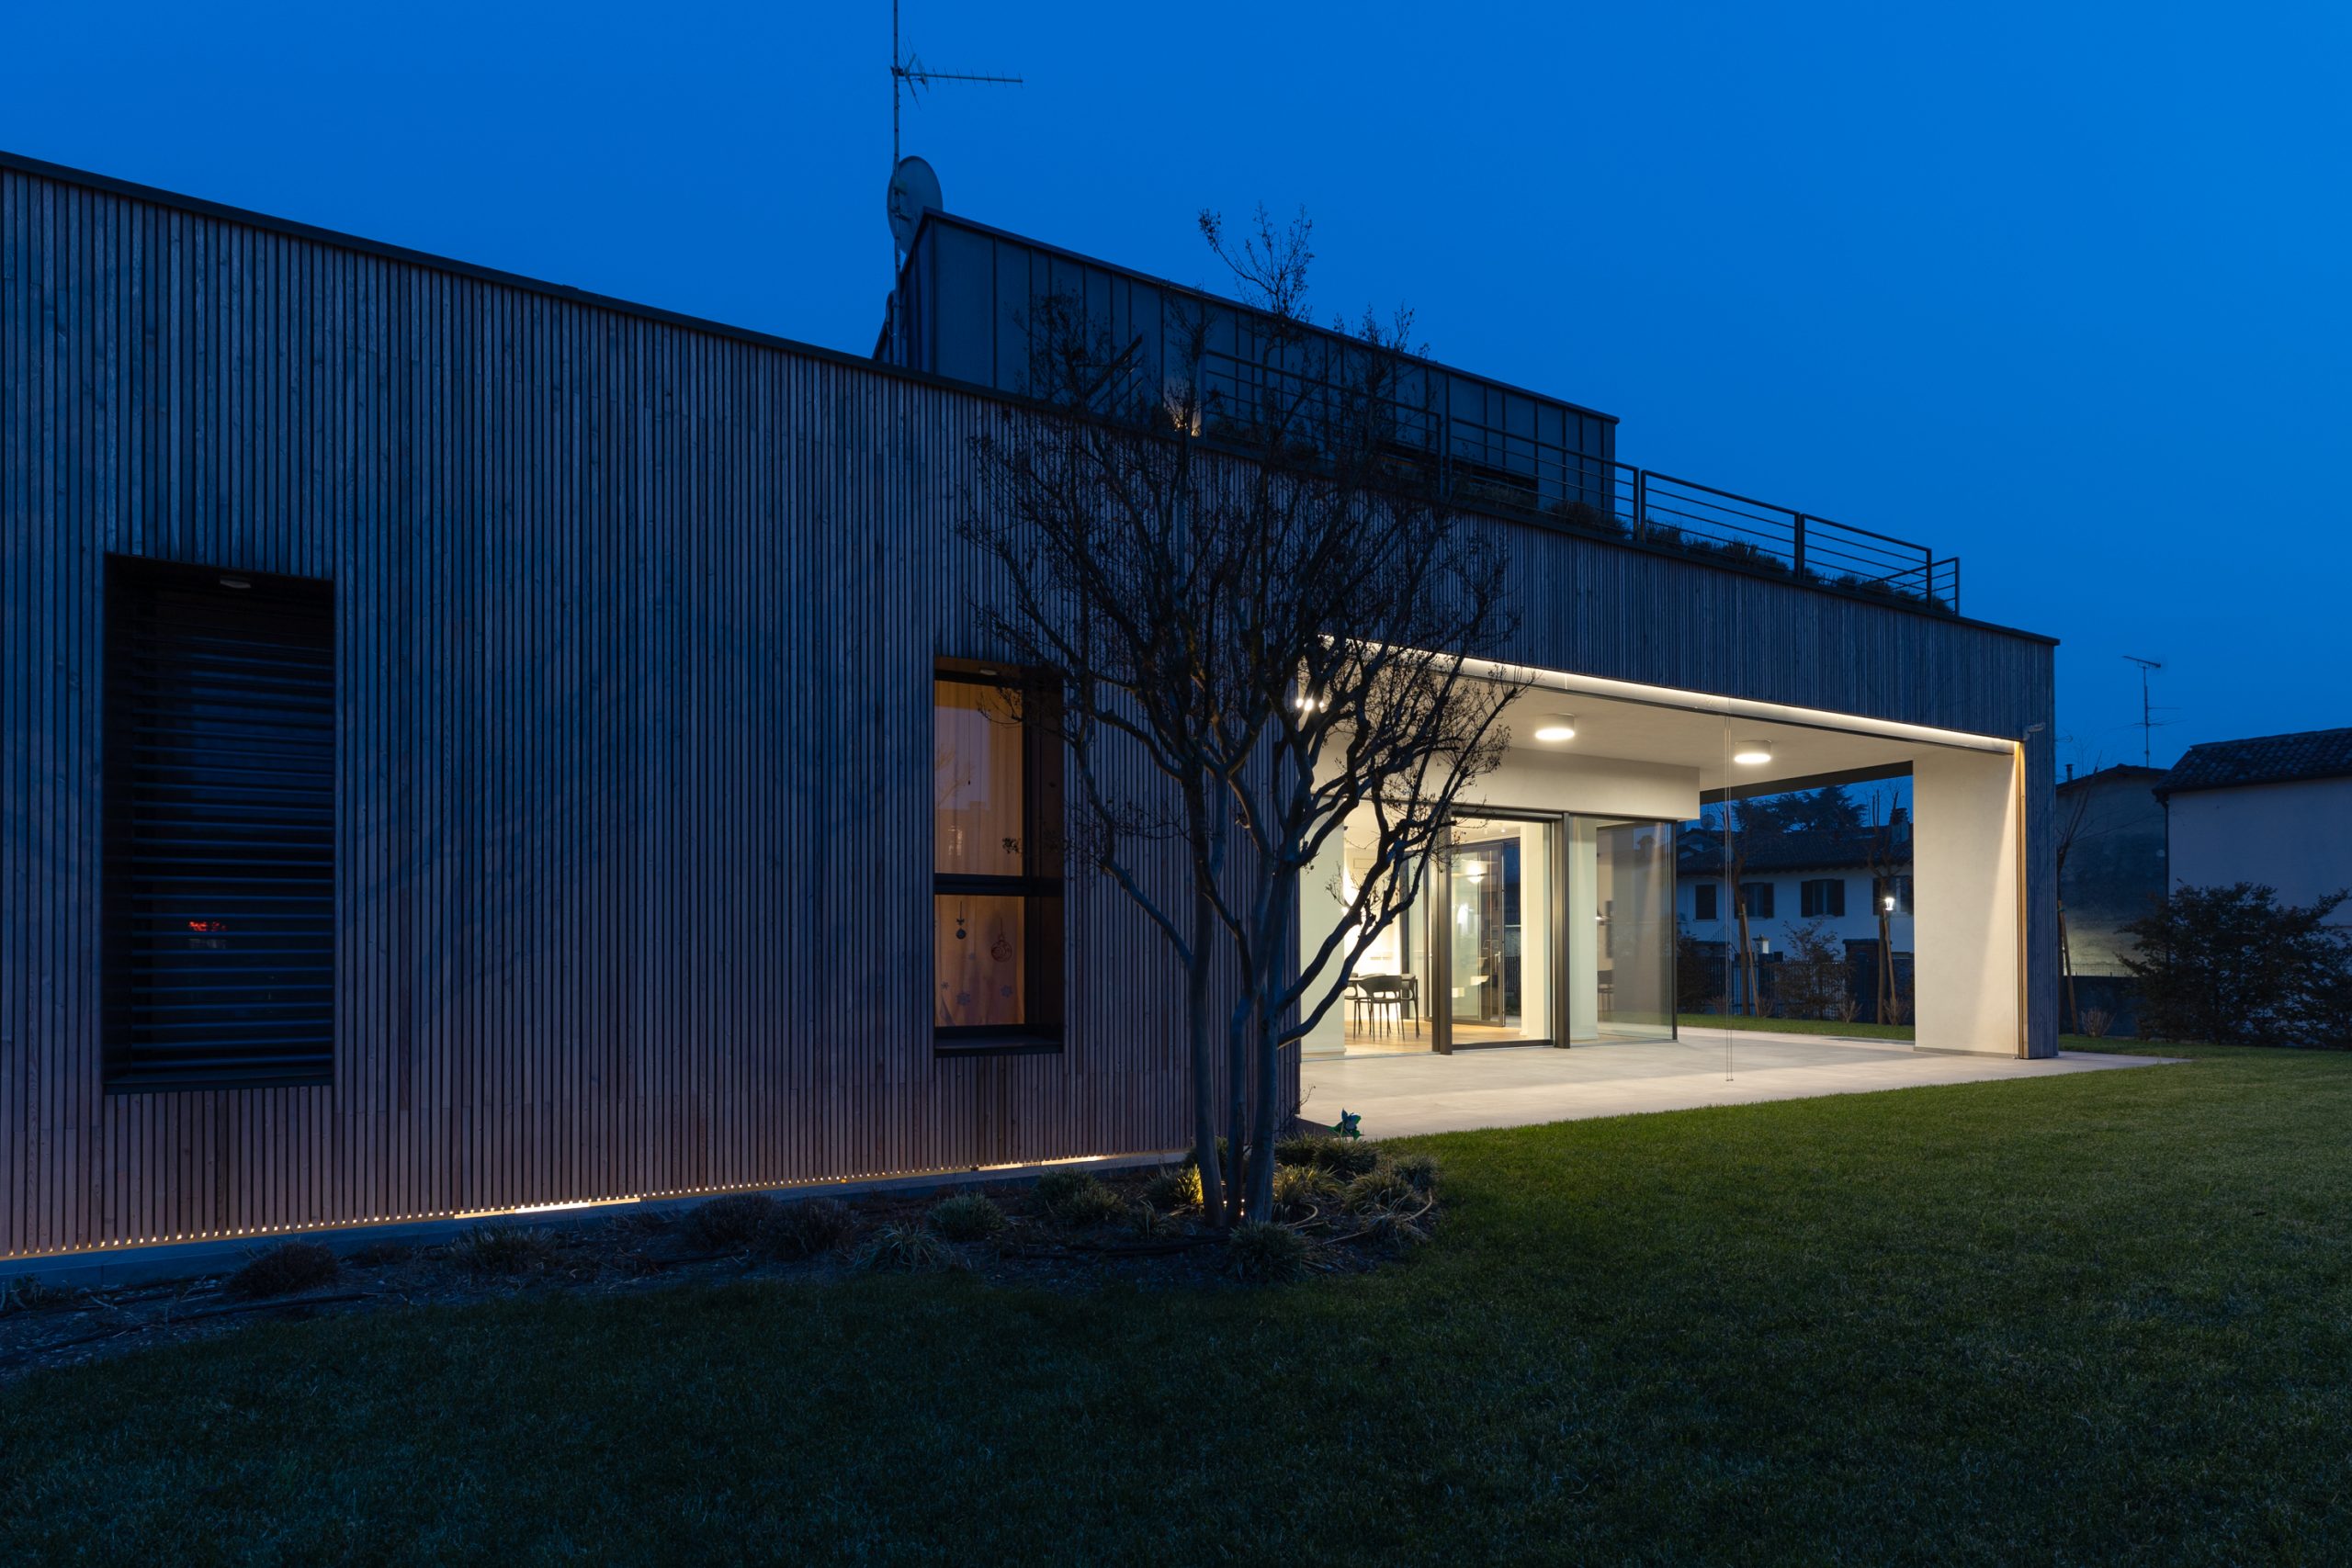 Esterno di una villa moderna con giardino, con luci da soffitto che illuminano il portico